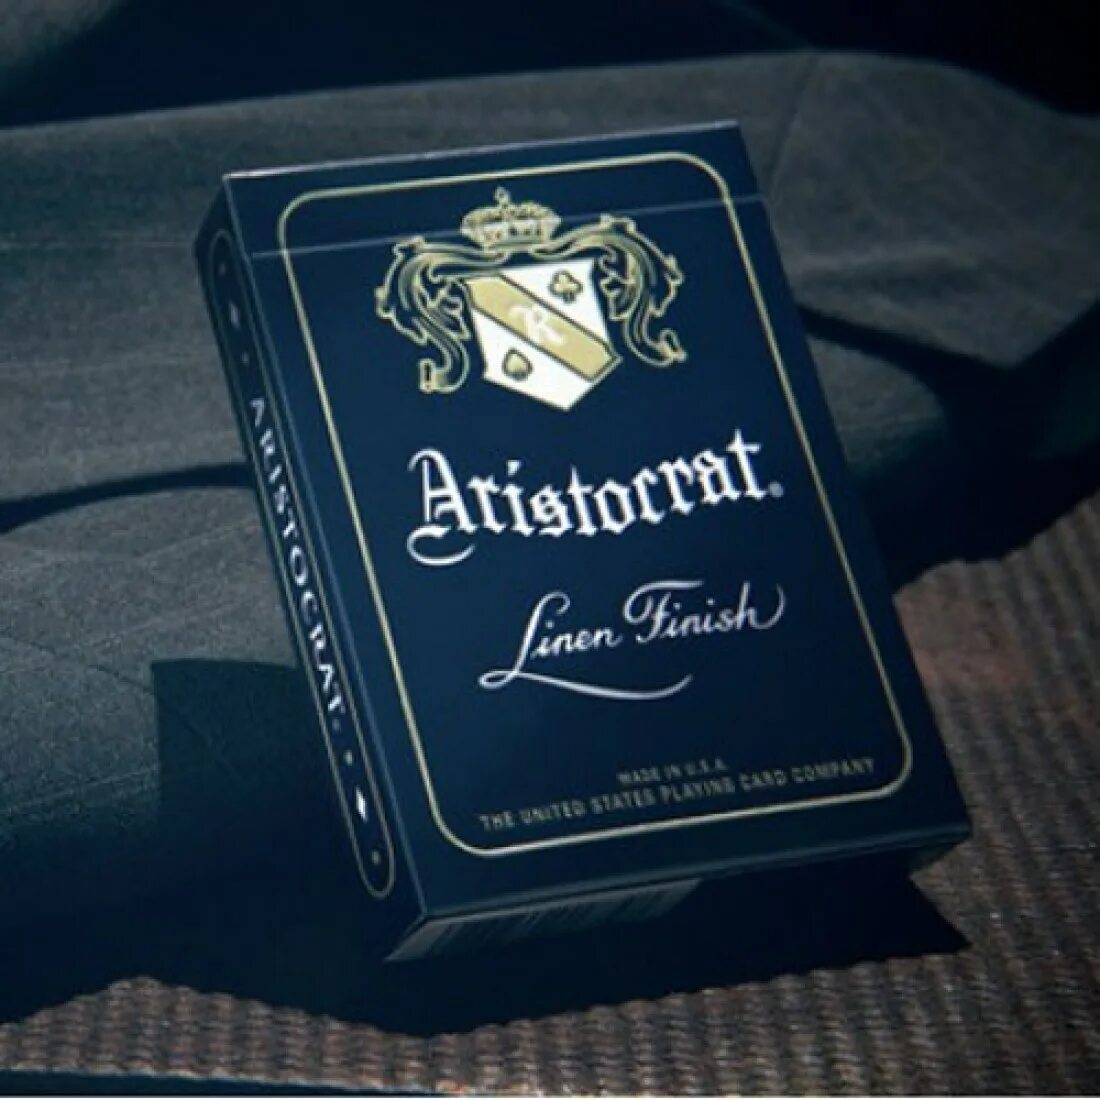 Bicycle Aristocrat 727. Aristocrat (Blue). Elegant Aristocrat Core. Aristokrat Linen finish Cards. Only attempt